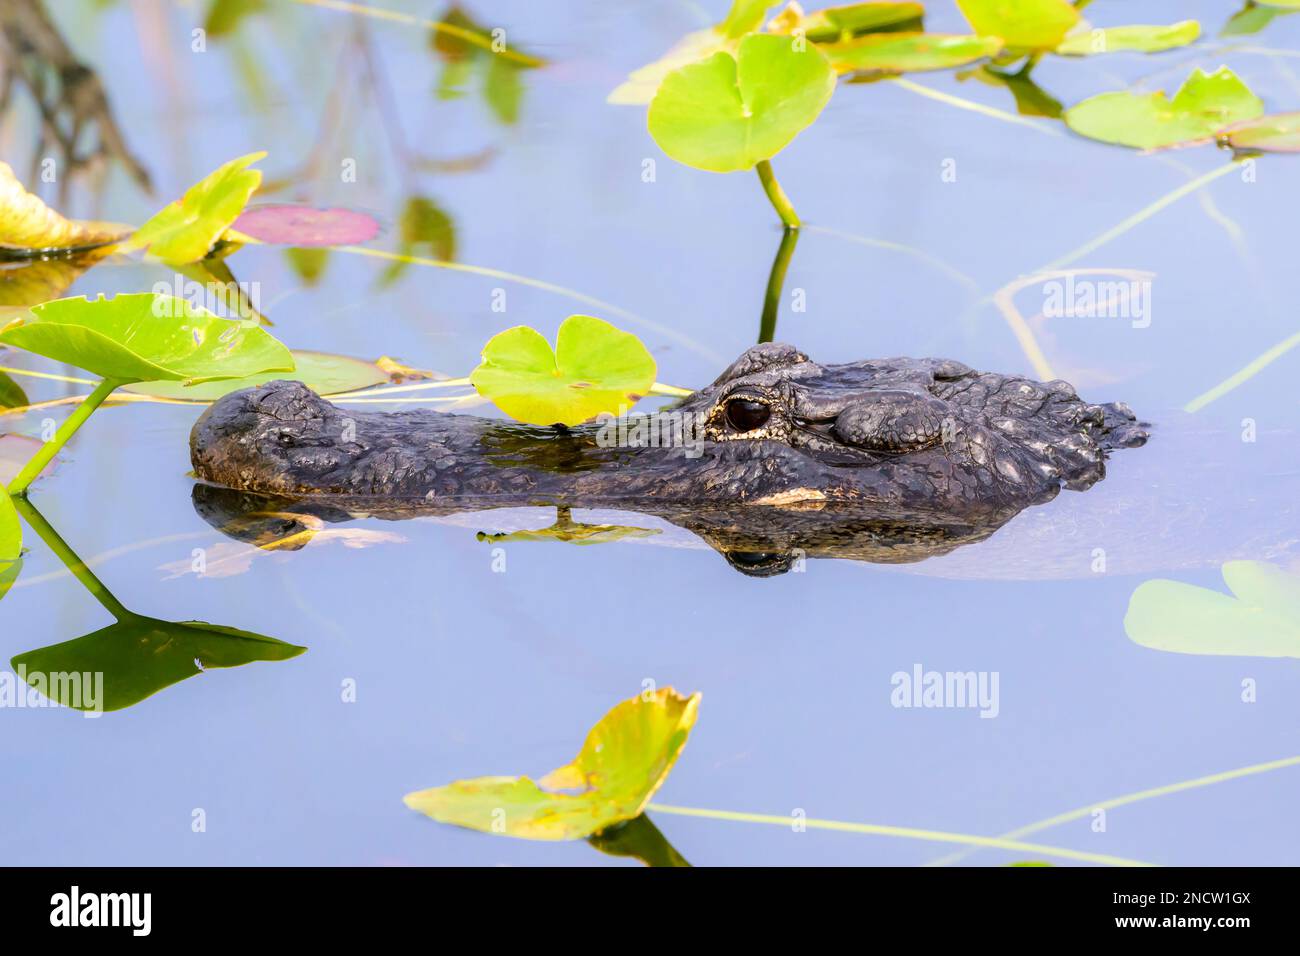 Alligator américain (Alligator mississippiensis) se cachant dans l'eau entre les plantes lilly, parc national des Everglades, Floride, États-Unis. Banque D'Images